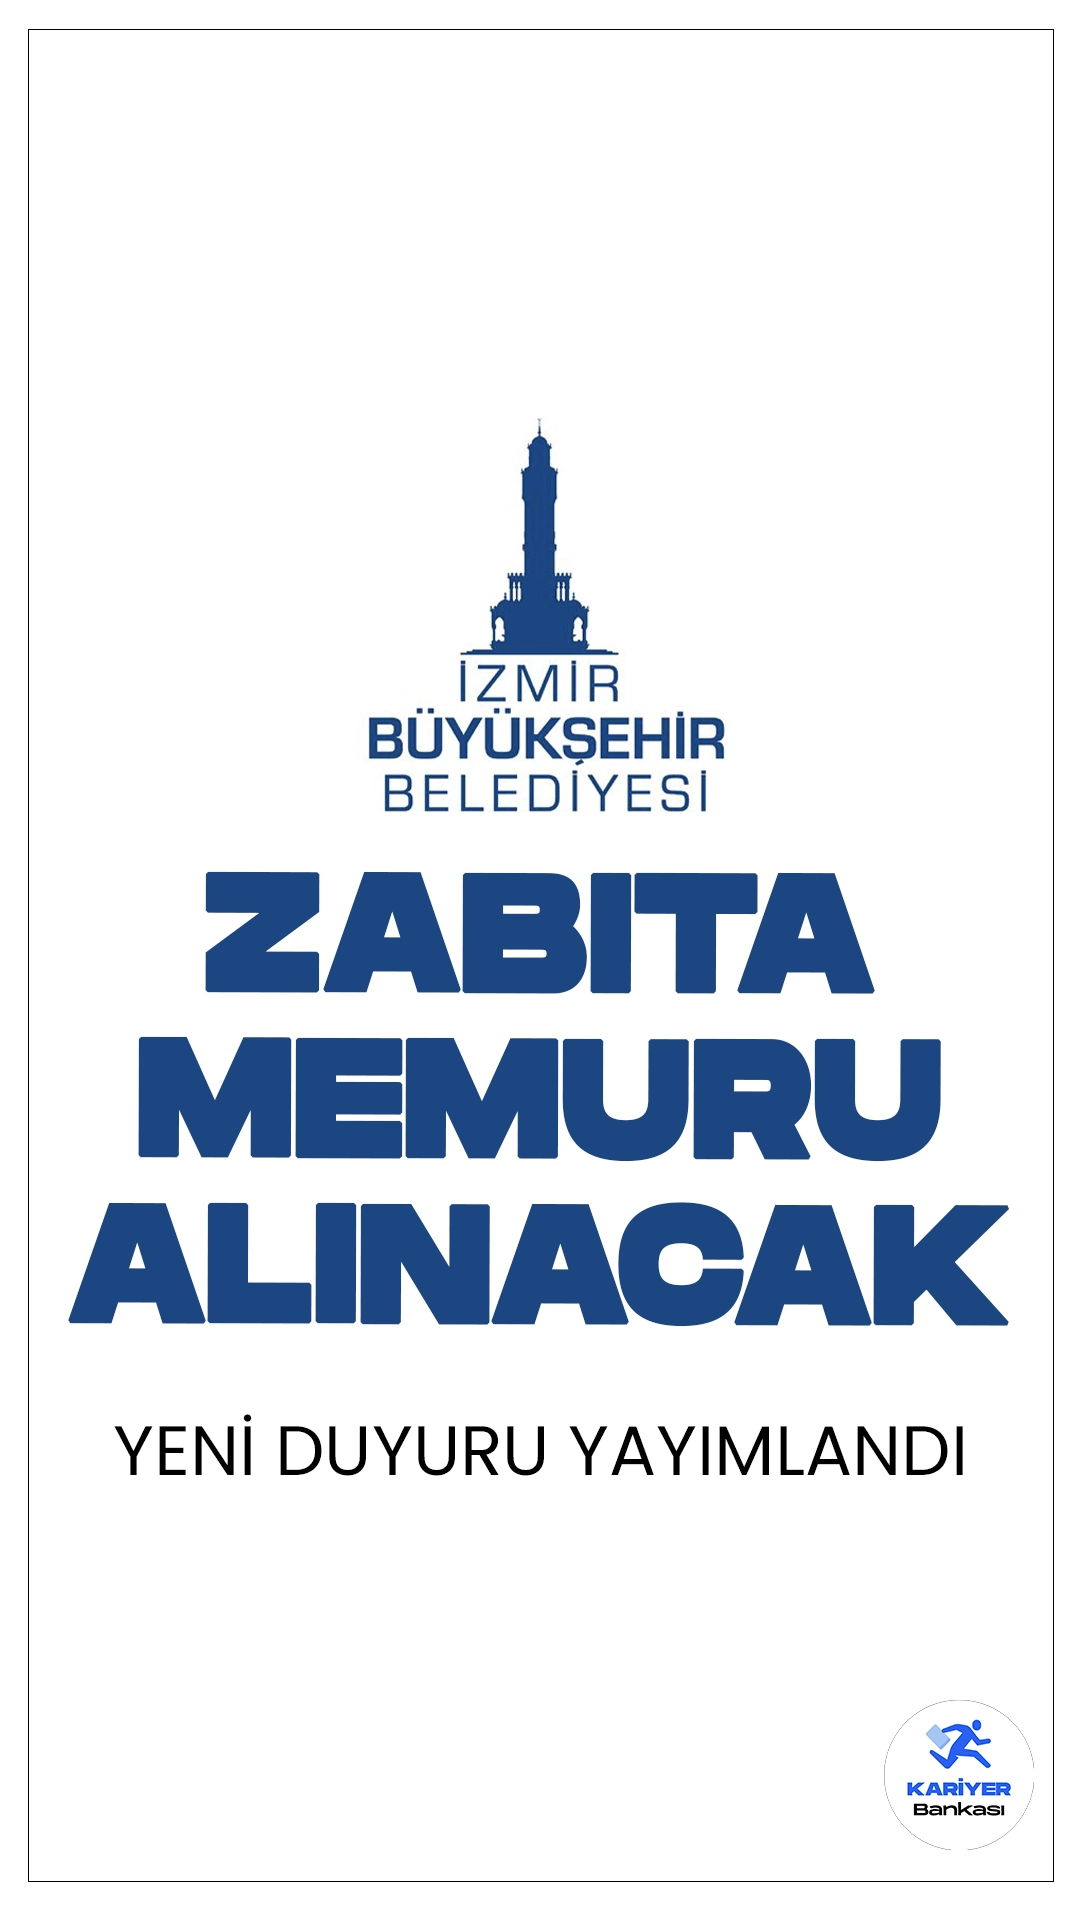 İzmir Büyükşehir Belediyesi 36 Zabıta Memuru Alacak. İlgili alım duyurusuna göre, İzmir Büyükşehir Belediyesi kadın-erkek adaylardan olmak üzere KPSS en az 65 puanla zabıta memuru alımı yapacak. Başvuru yapacak adayların başvuru şartlarını taşıyor olması gerekmektedir.